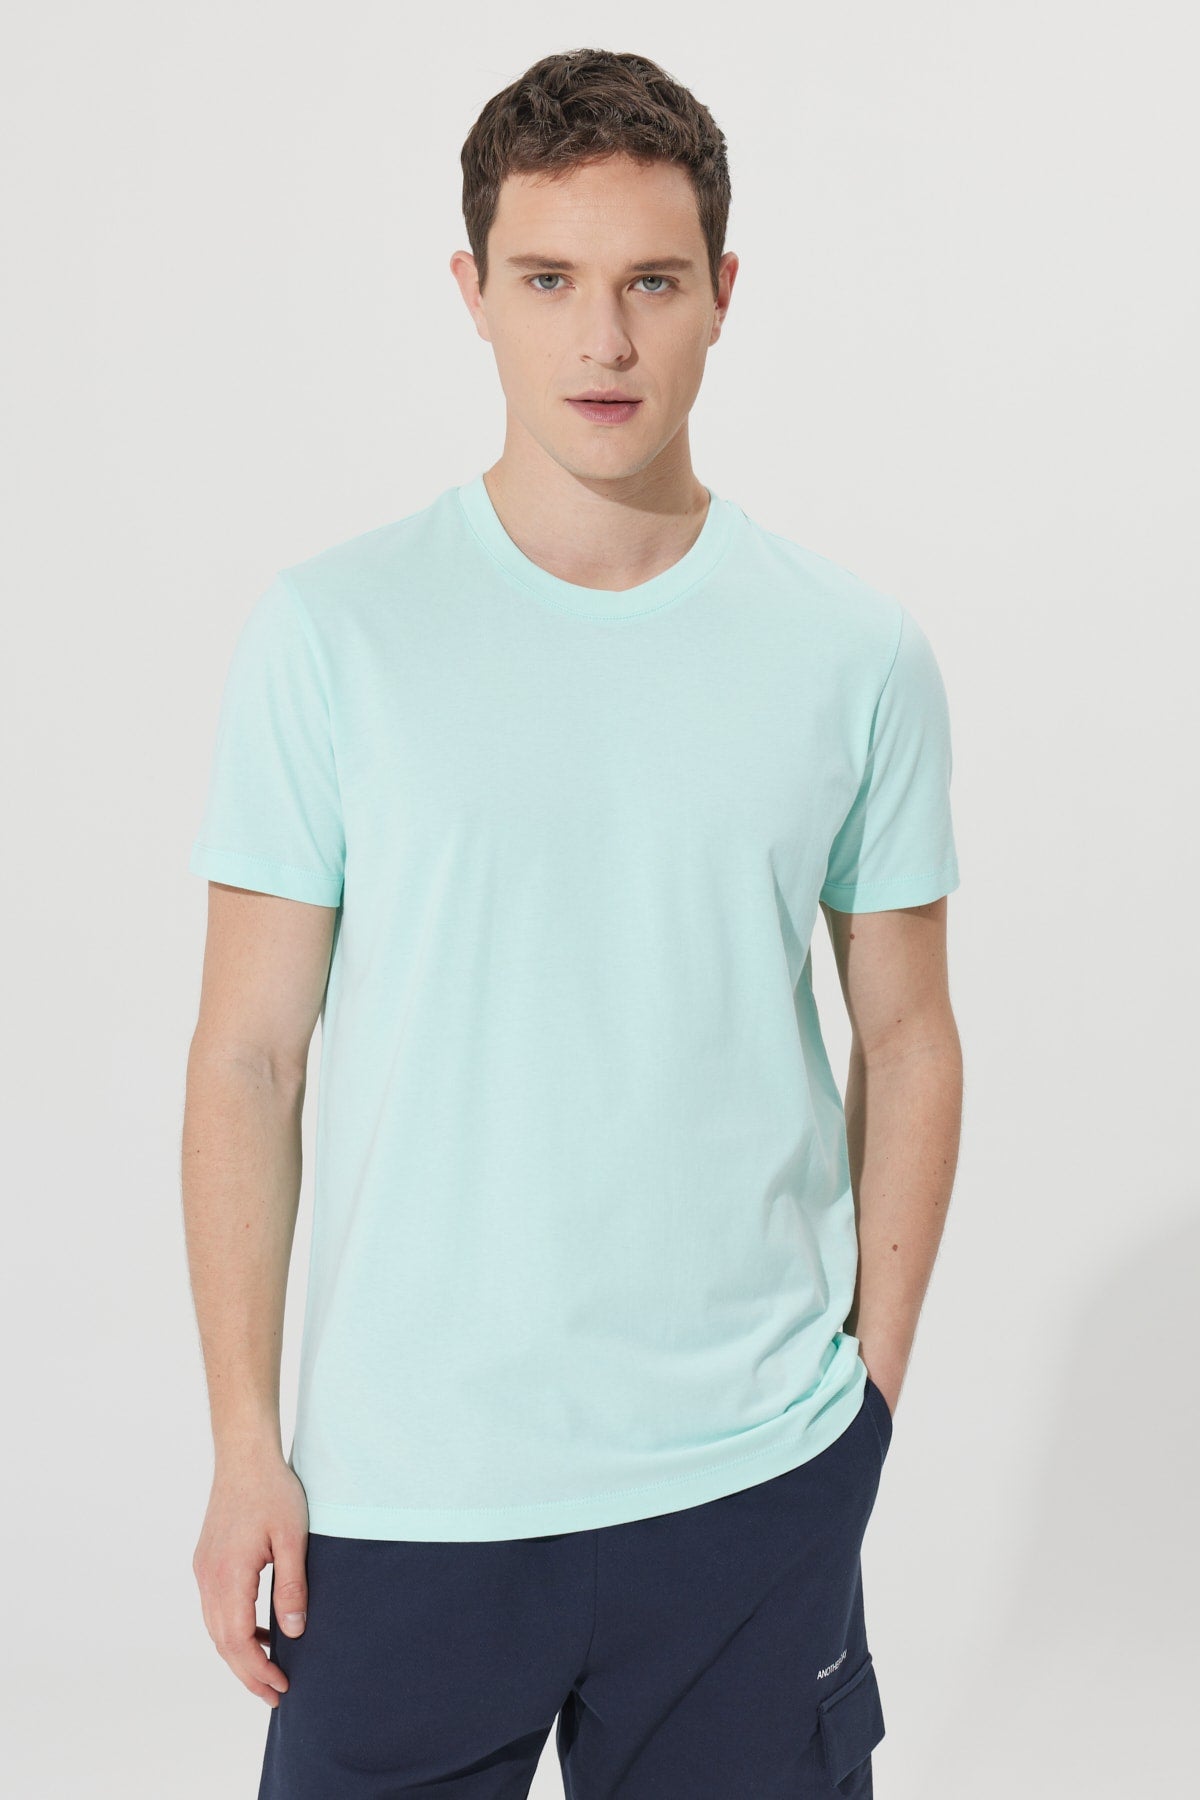 Men's Mint 100% Cotton Slim Fit Slim Fit Crew Neck Short Sleeved T-Shirt